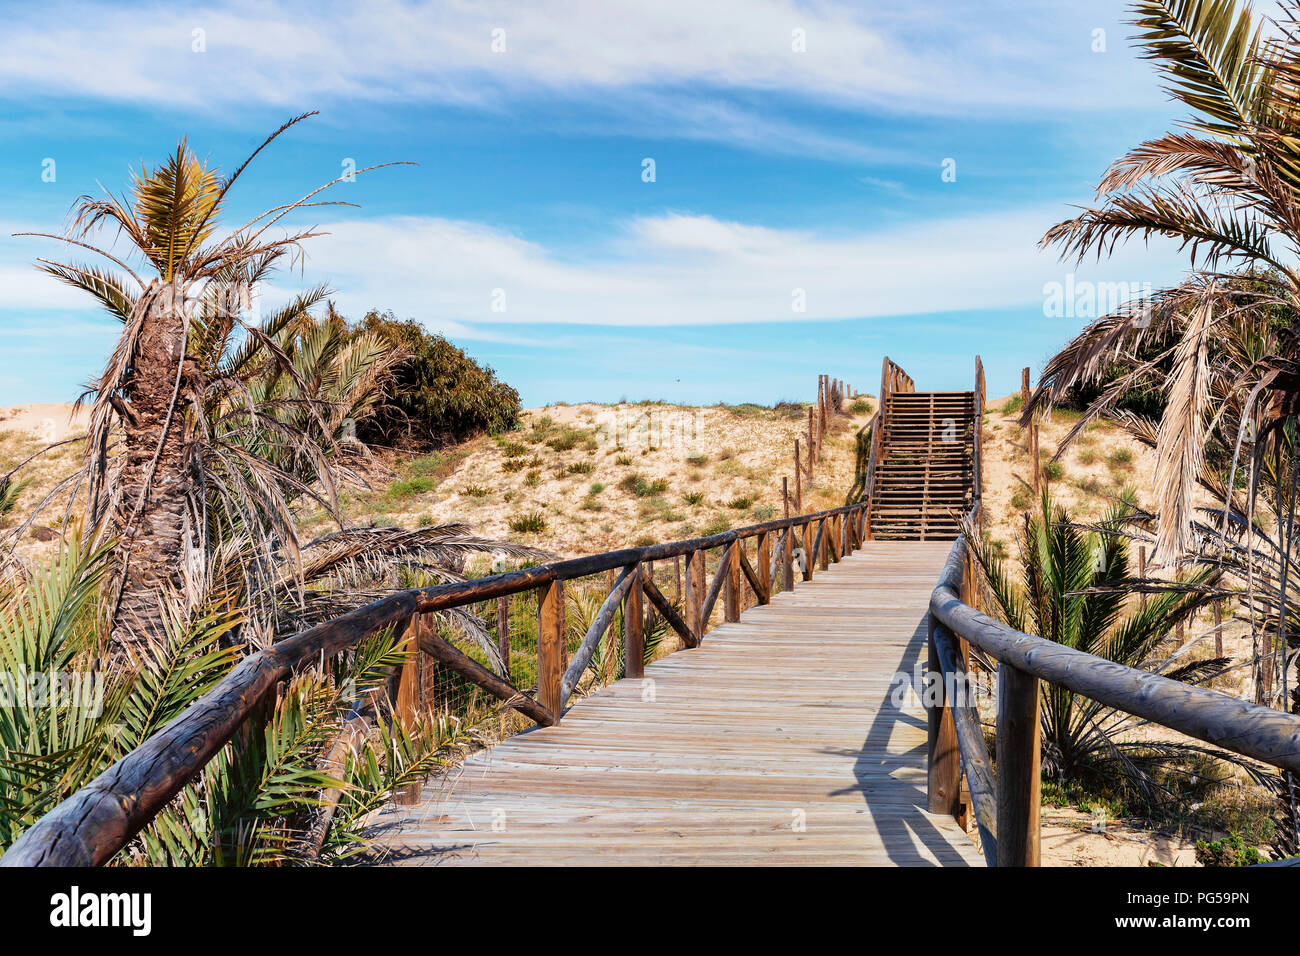 Percorso di legno e scale sulle dune di sabbia e palme per accesso alla spiaggia Foto Stock